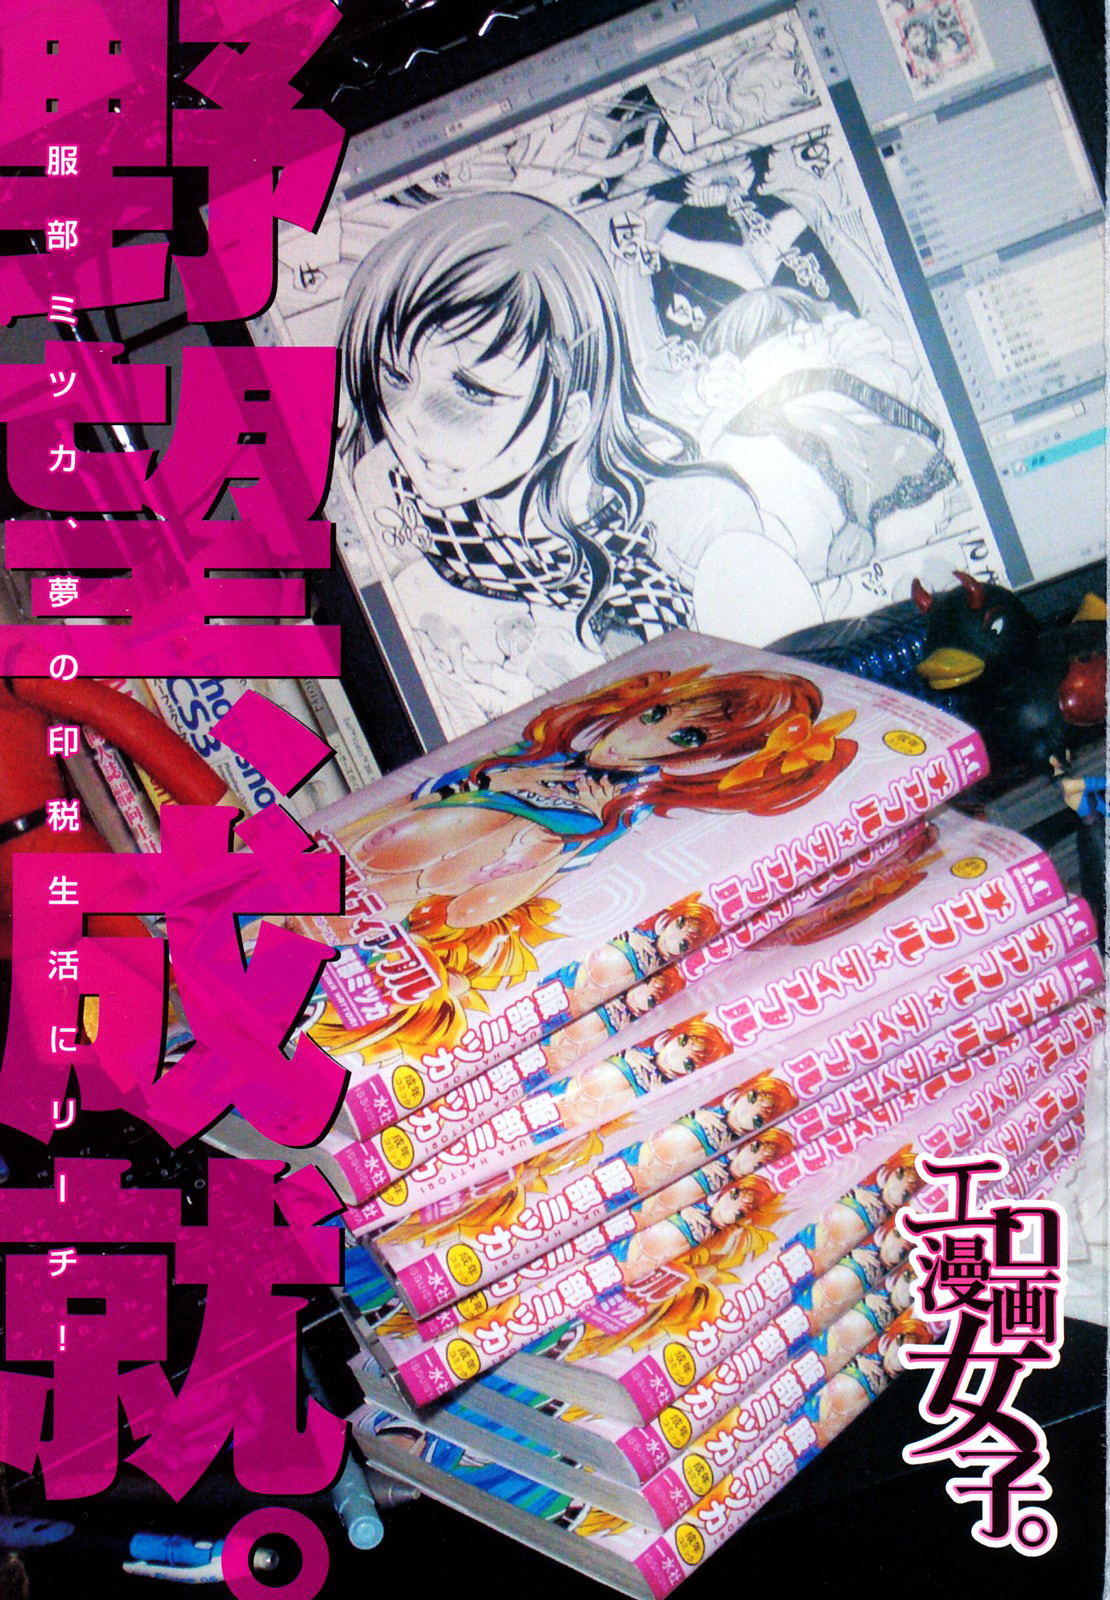 [Hattori Mitsuka] Ero Manga Girl (Chap 1-3, English) 